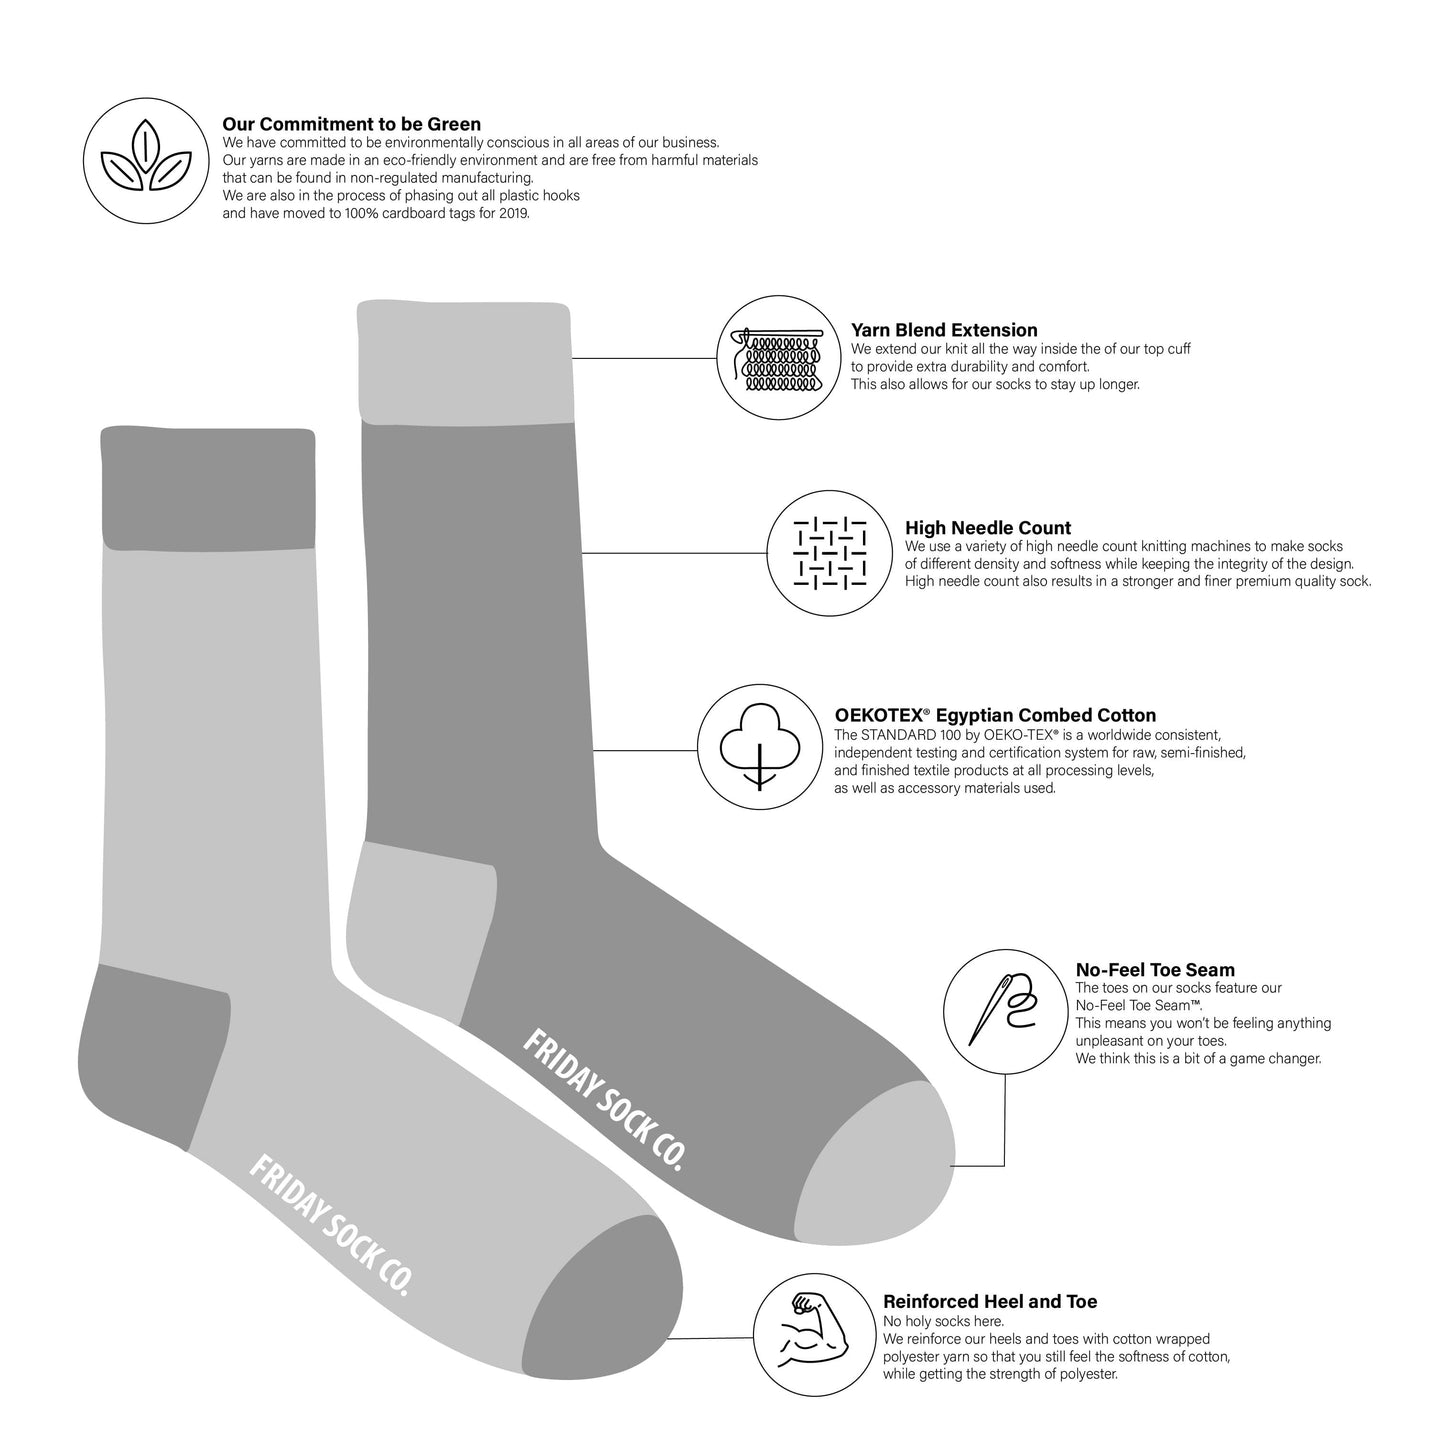 Men's Socks | Canadian Landscape | East Coast | Mismatched